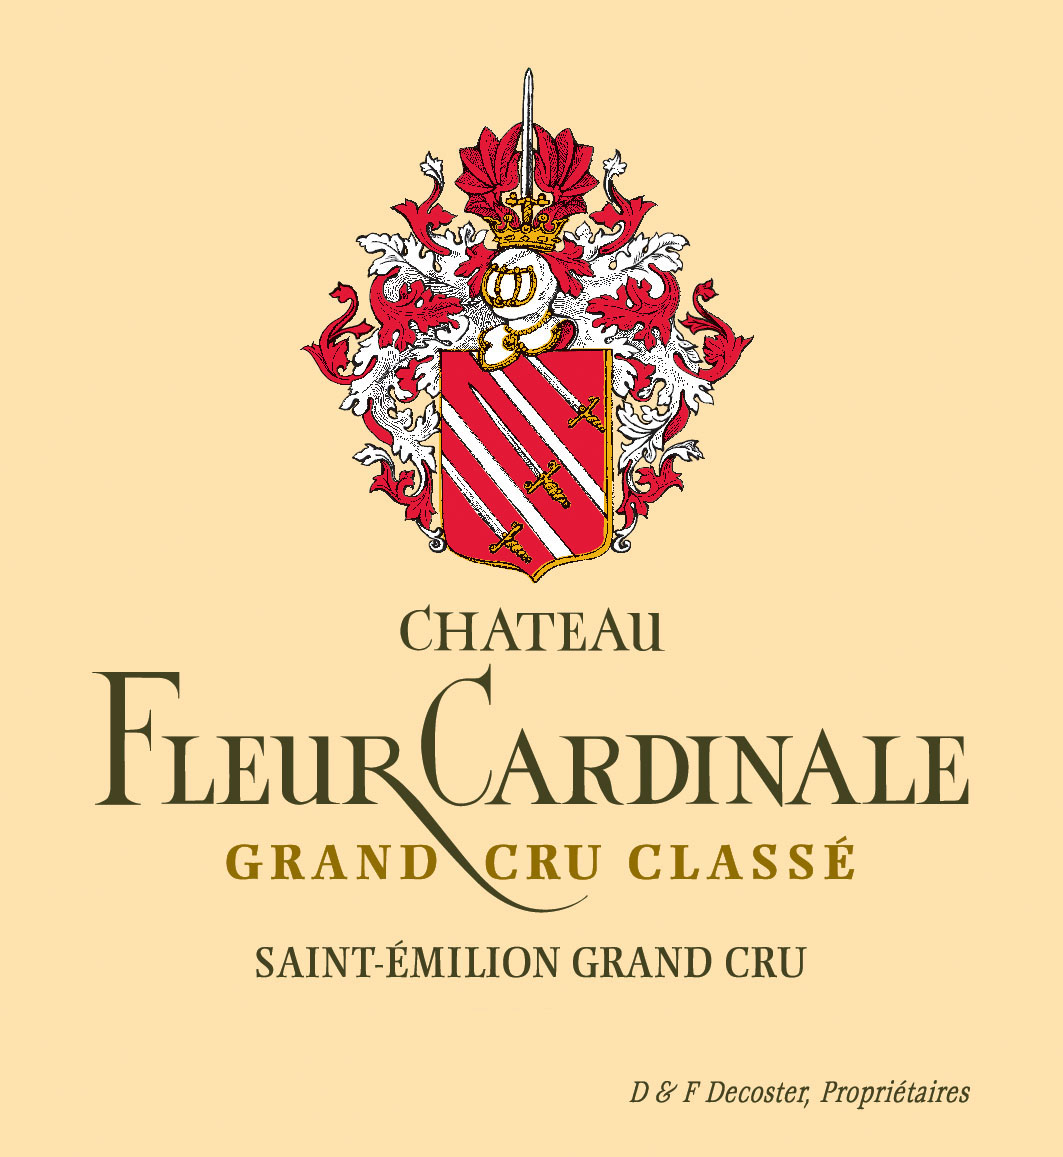 Chateau Fleur Cardinale label